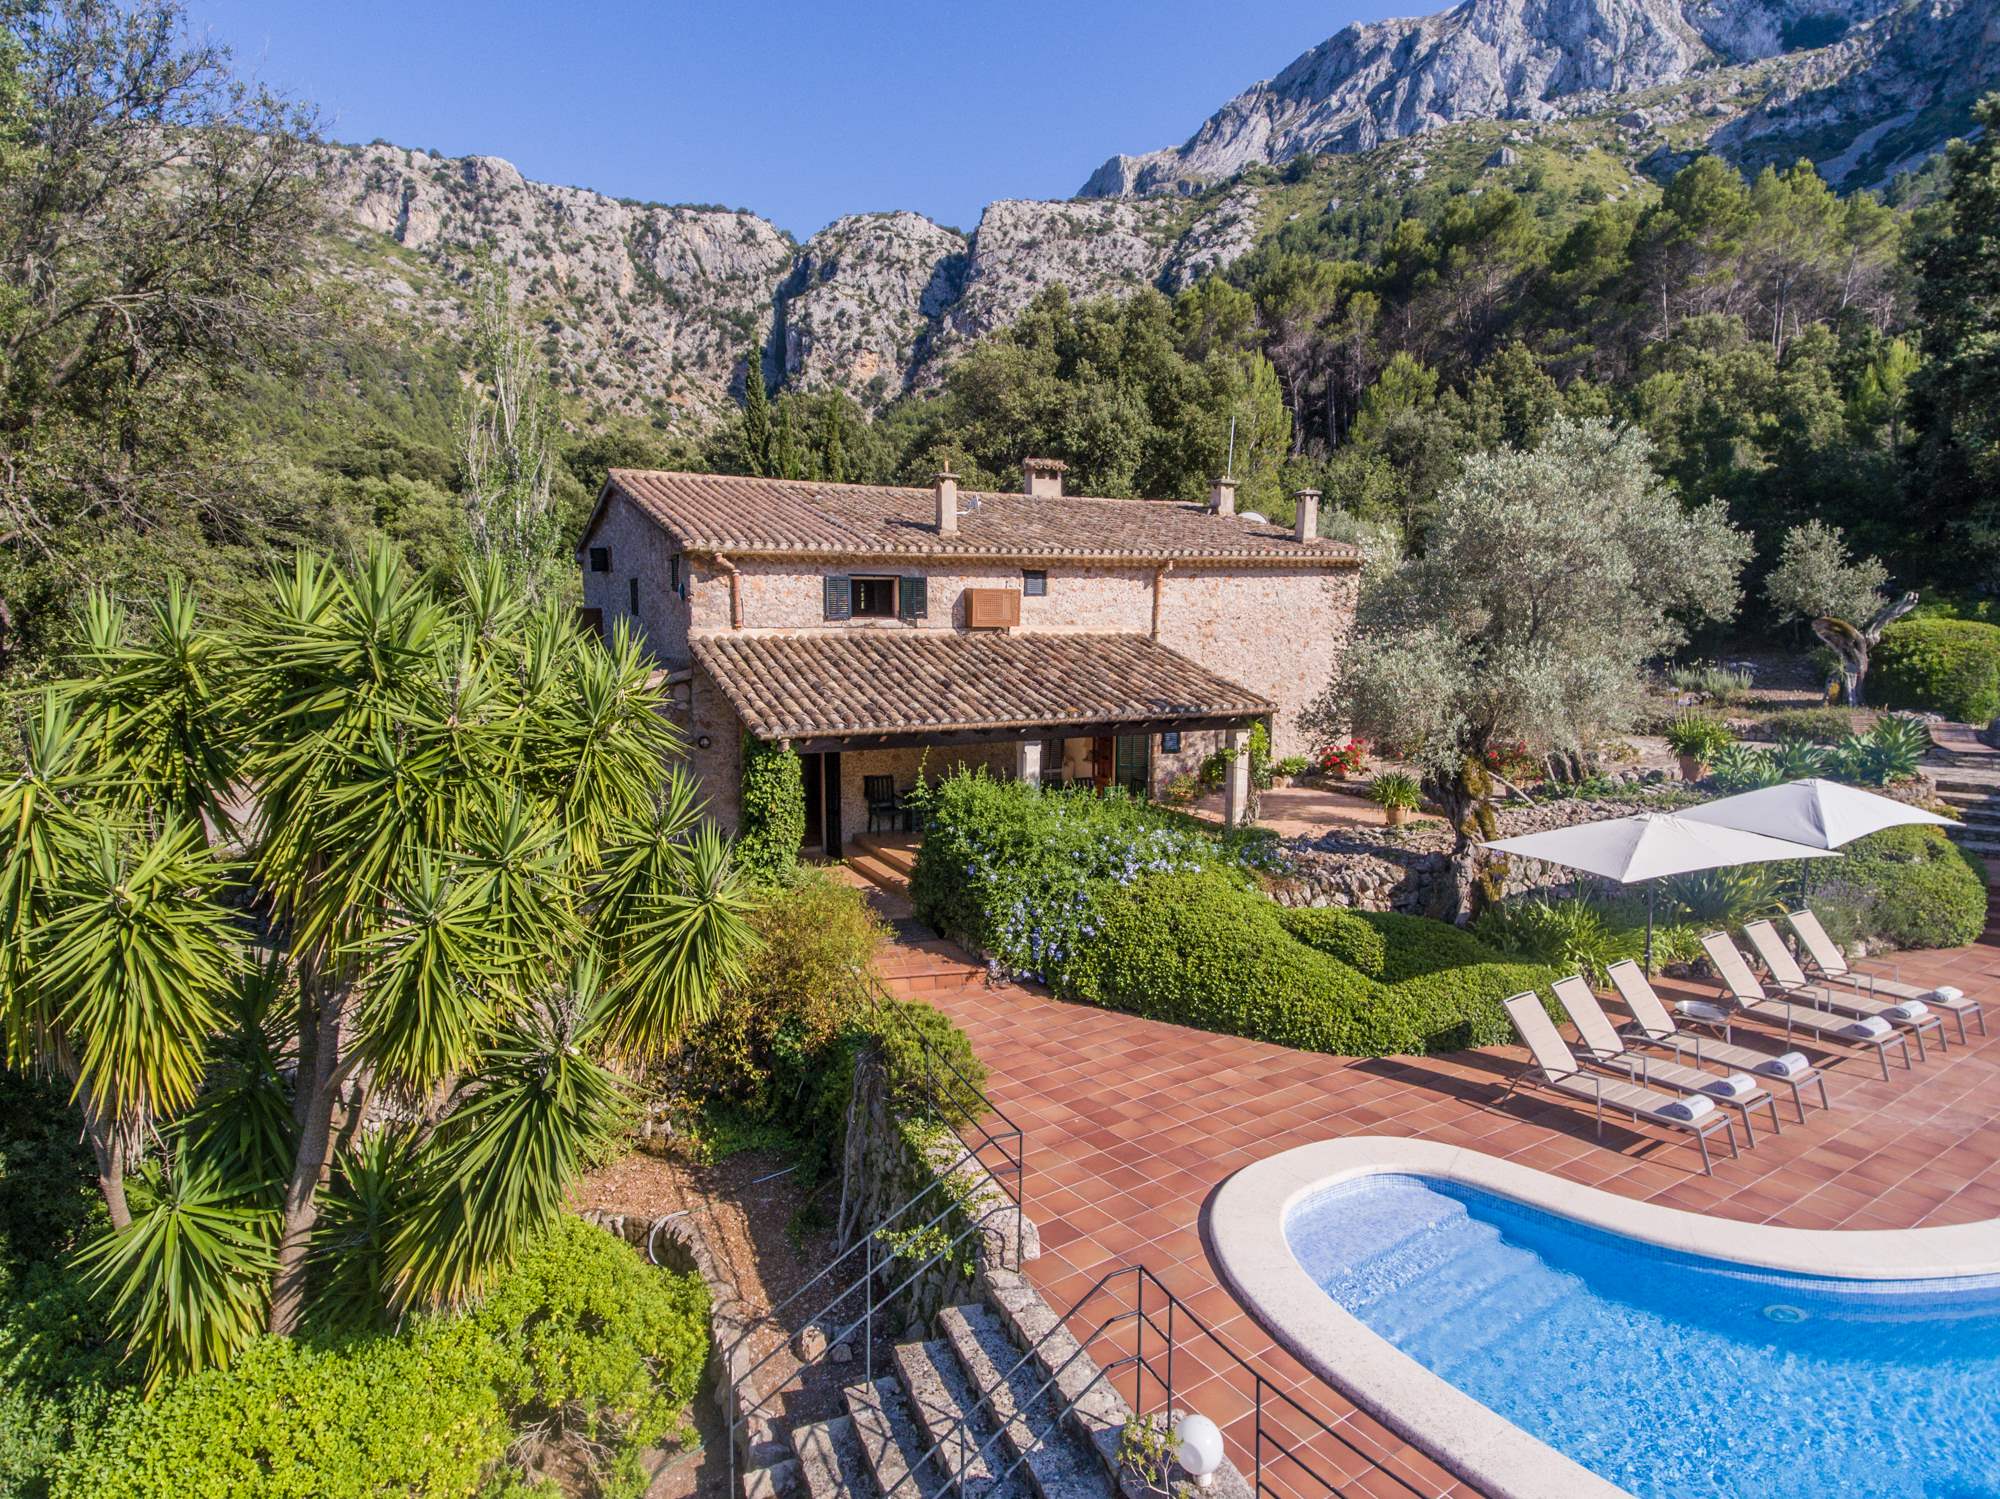 Es Clotal, 2 bedroom, 2 bedroom villa in Pollensa & Puerto Pollensa, Majorca Photo #1